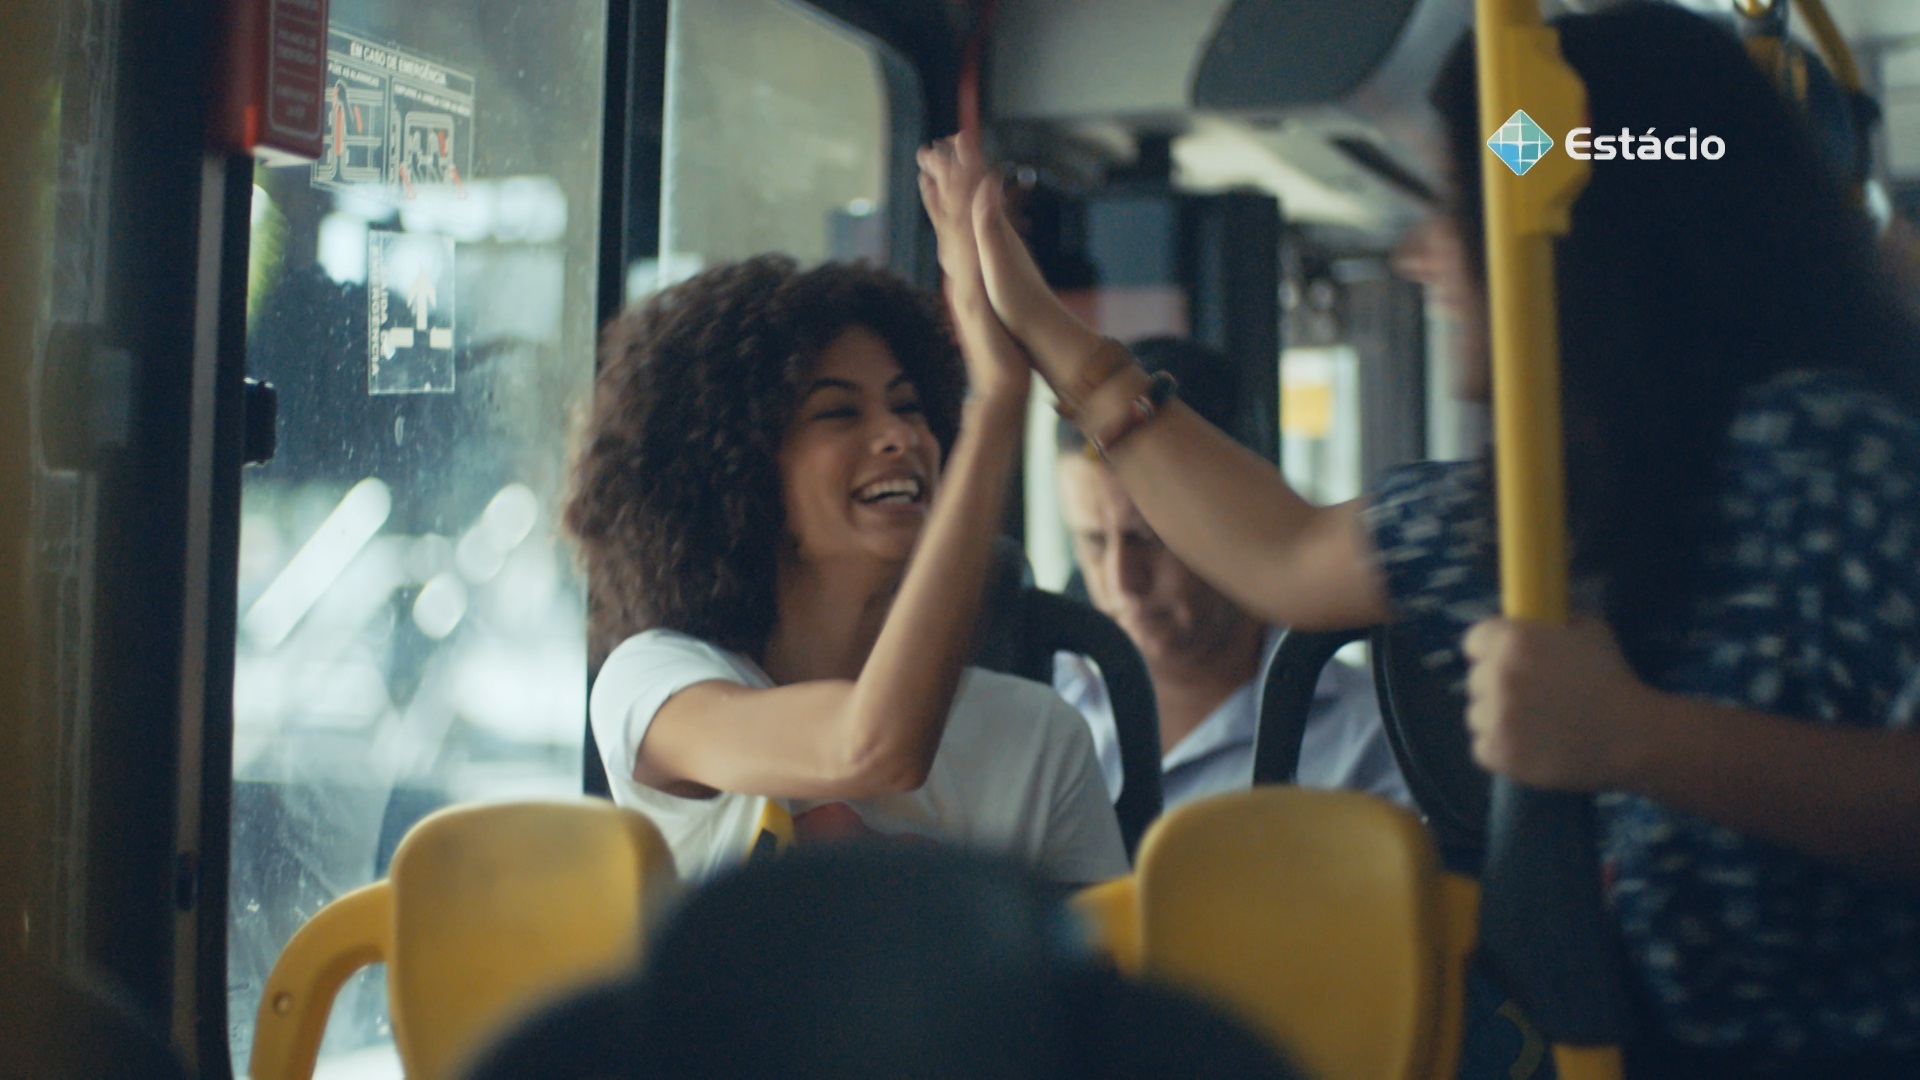 Dentro de um ônibus, duas estudantes se cumprimentam.